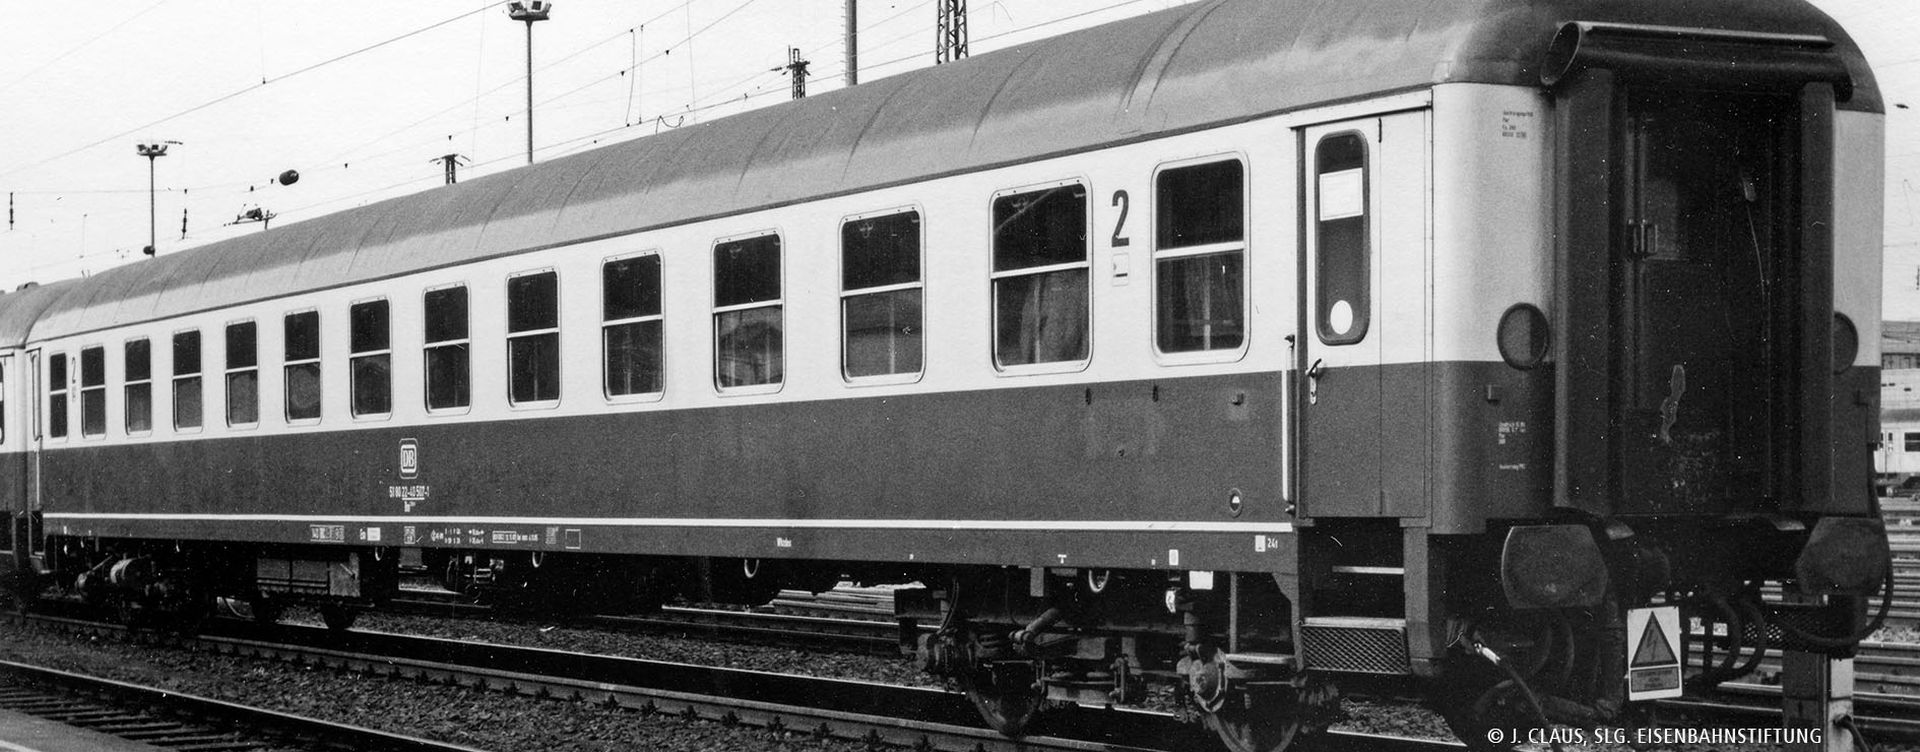 Brawa 58148 - Schnellzugwagen Bm238, DB, Ep.IV, mit Beleuchtung